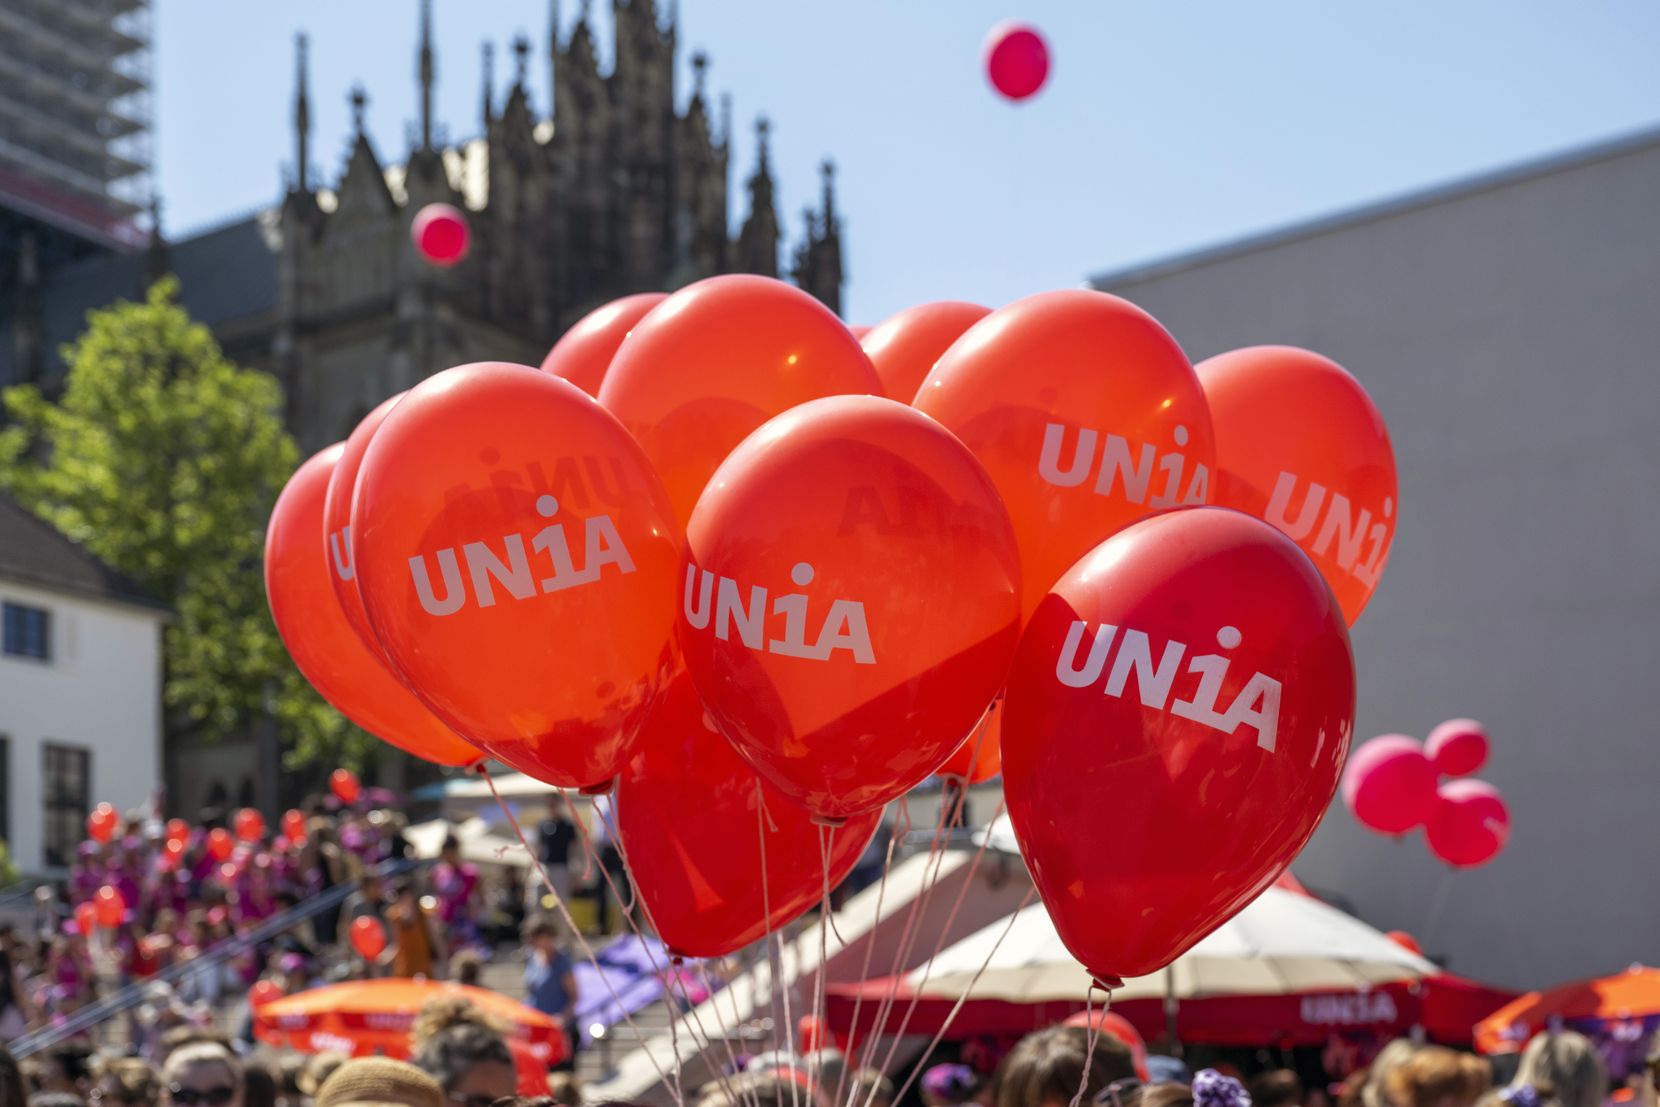 Luftballons mit der Aufschrift Unia.